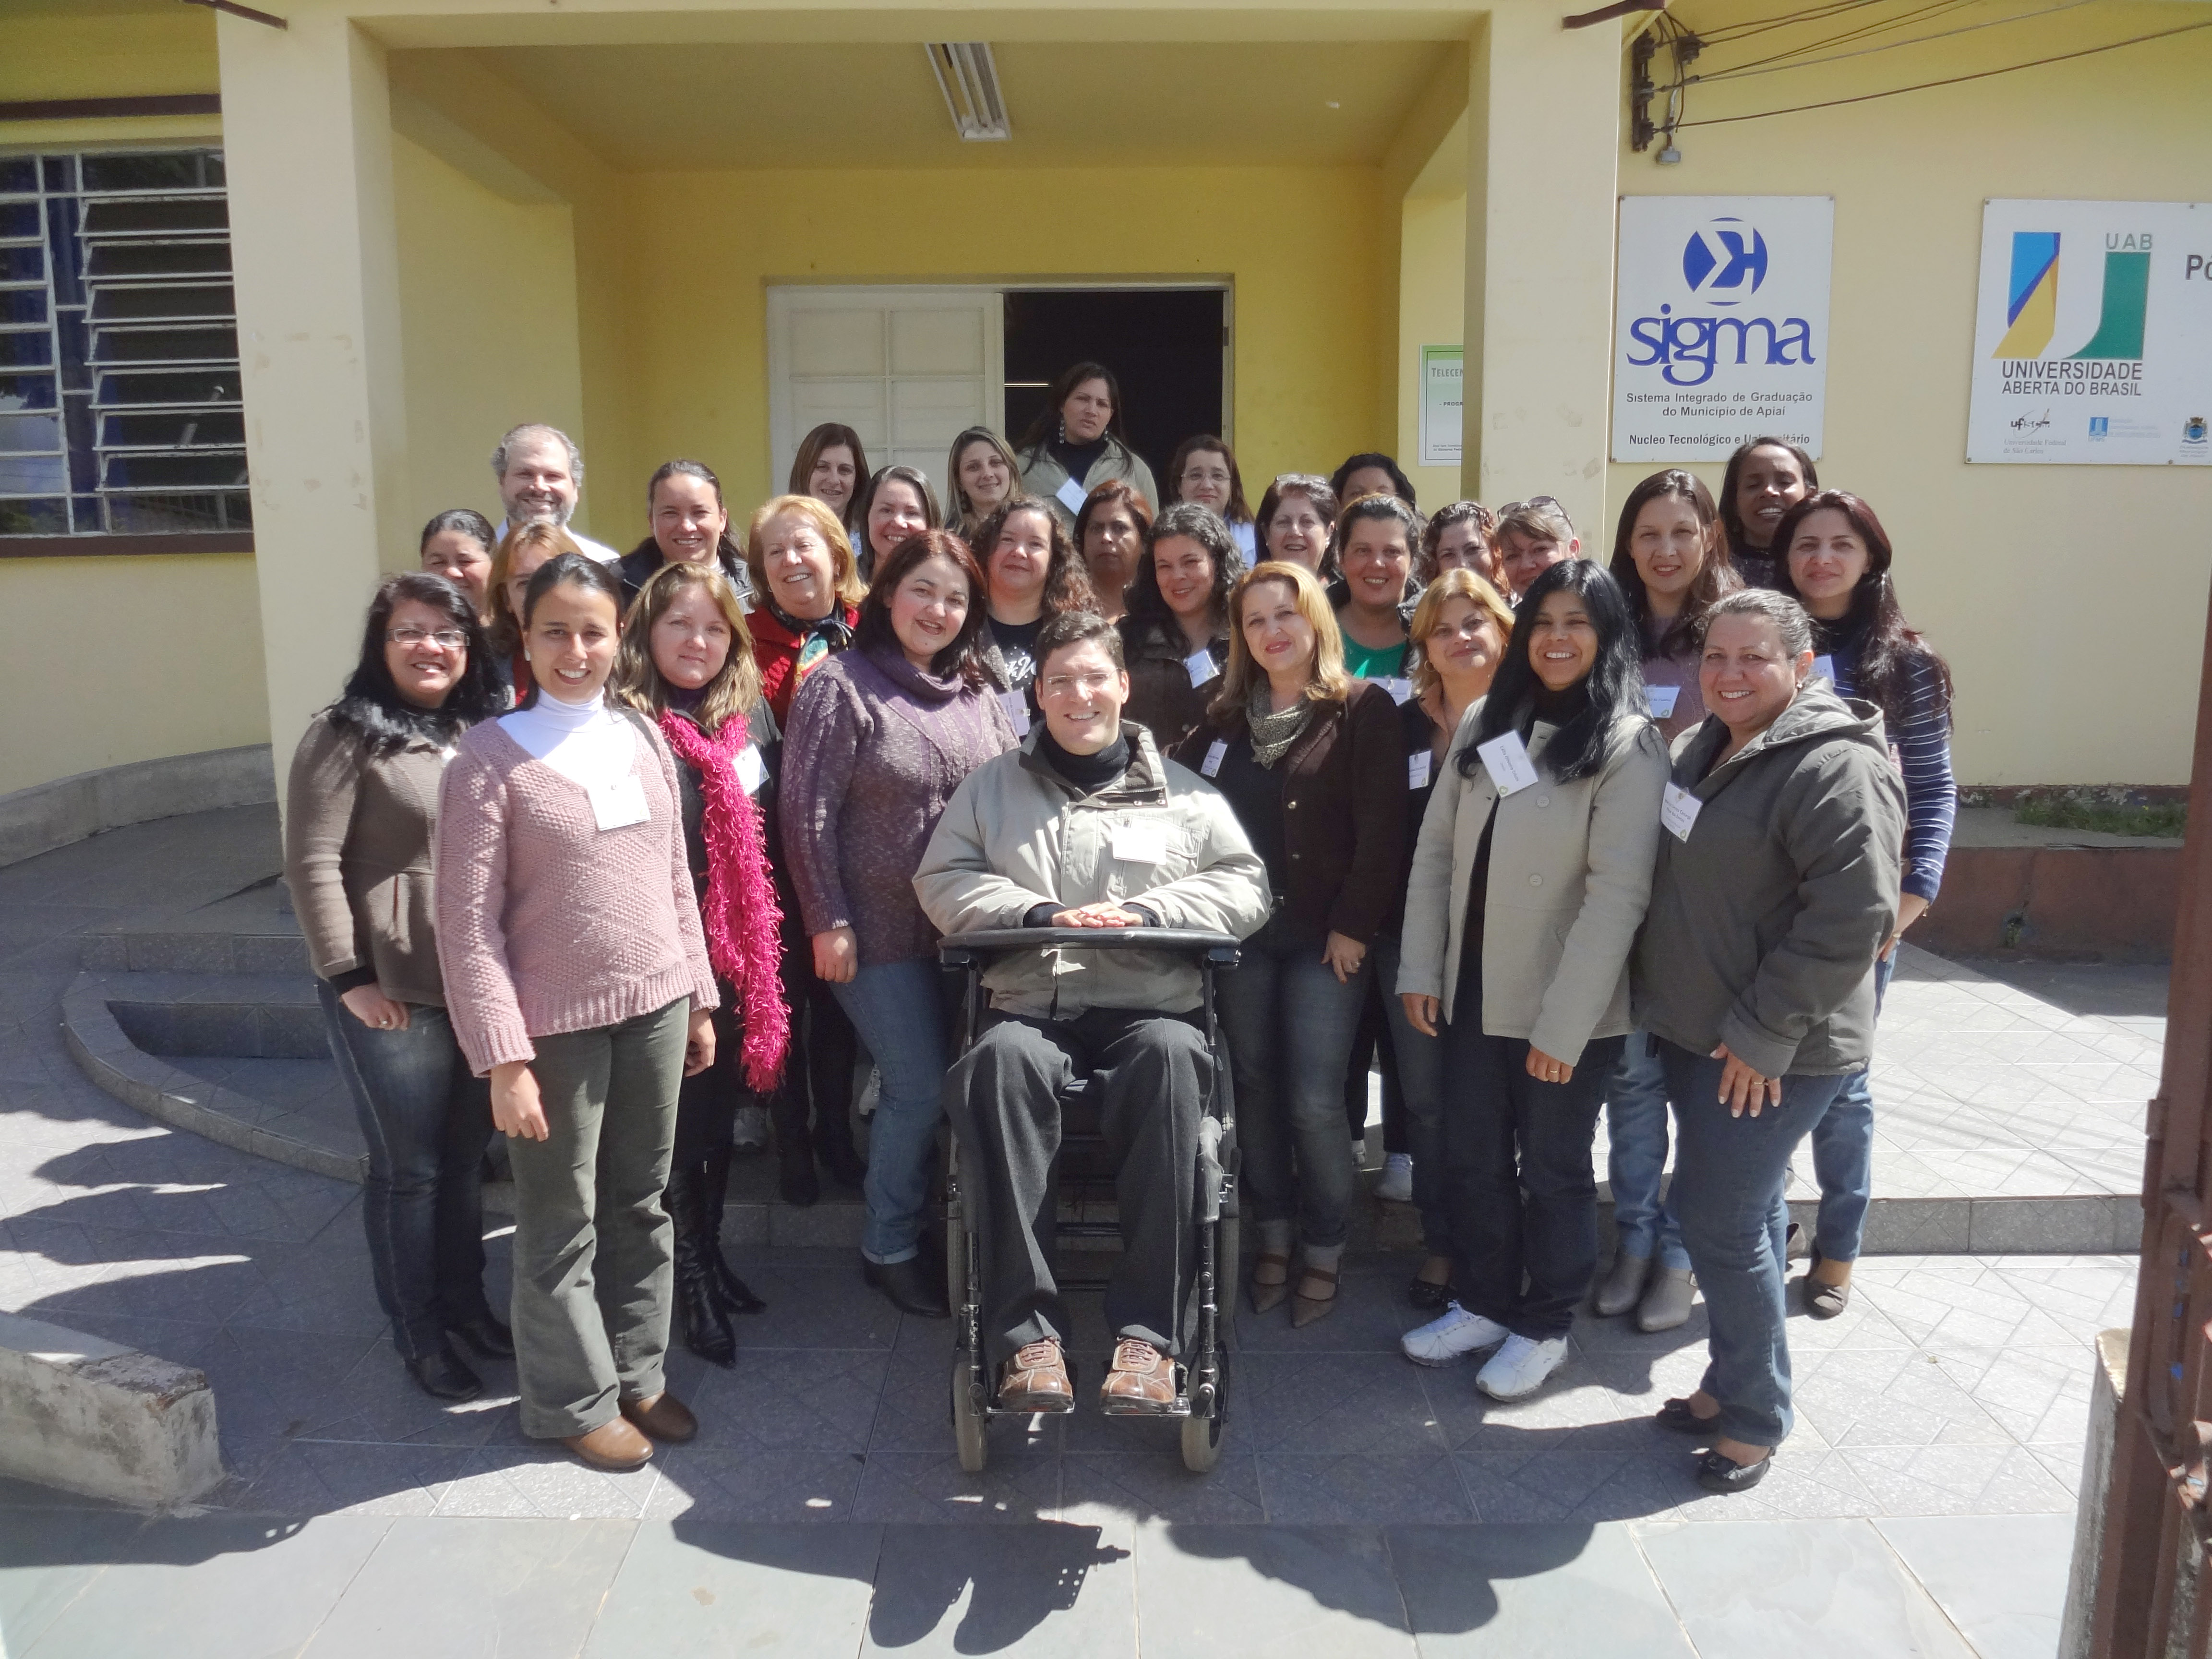 Grupo de educadoras posam sorridentes para foto em frente à universidade junto ao Rodrigo. O dia está ensolarado.